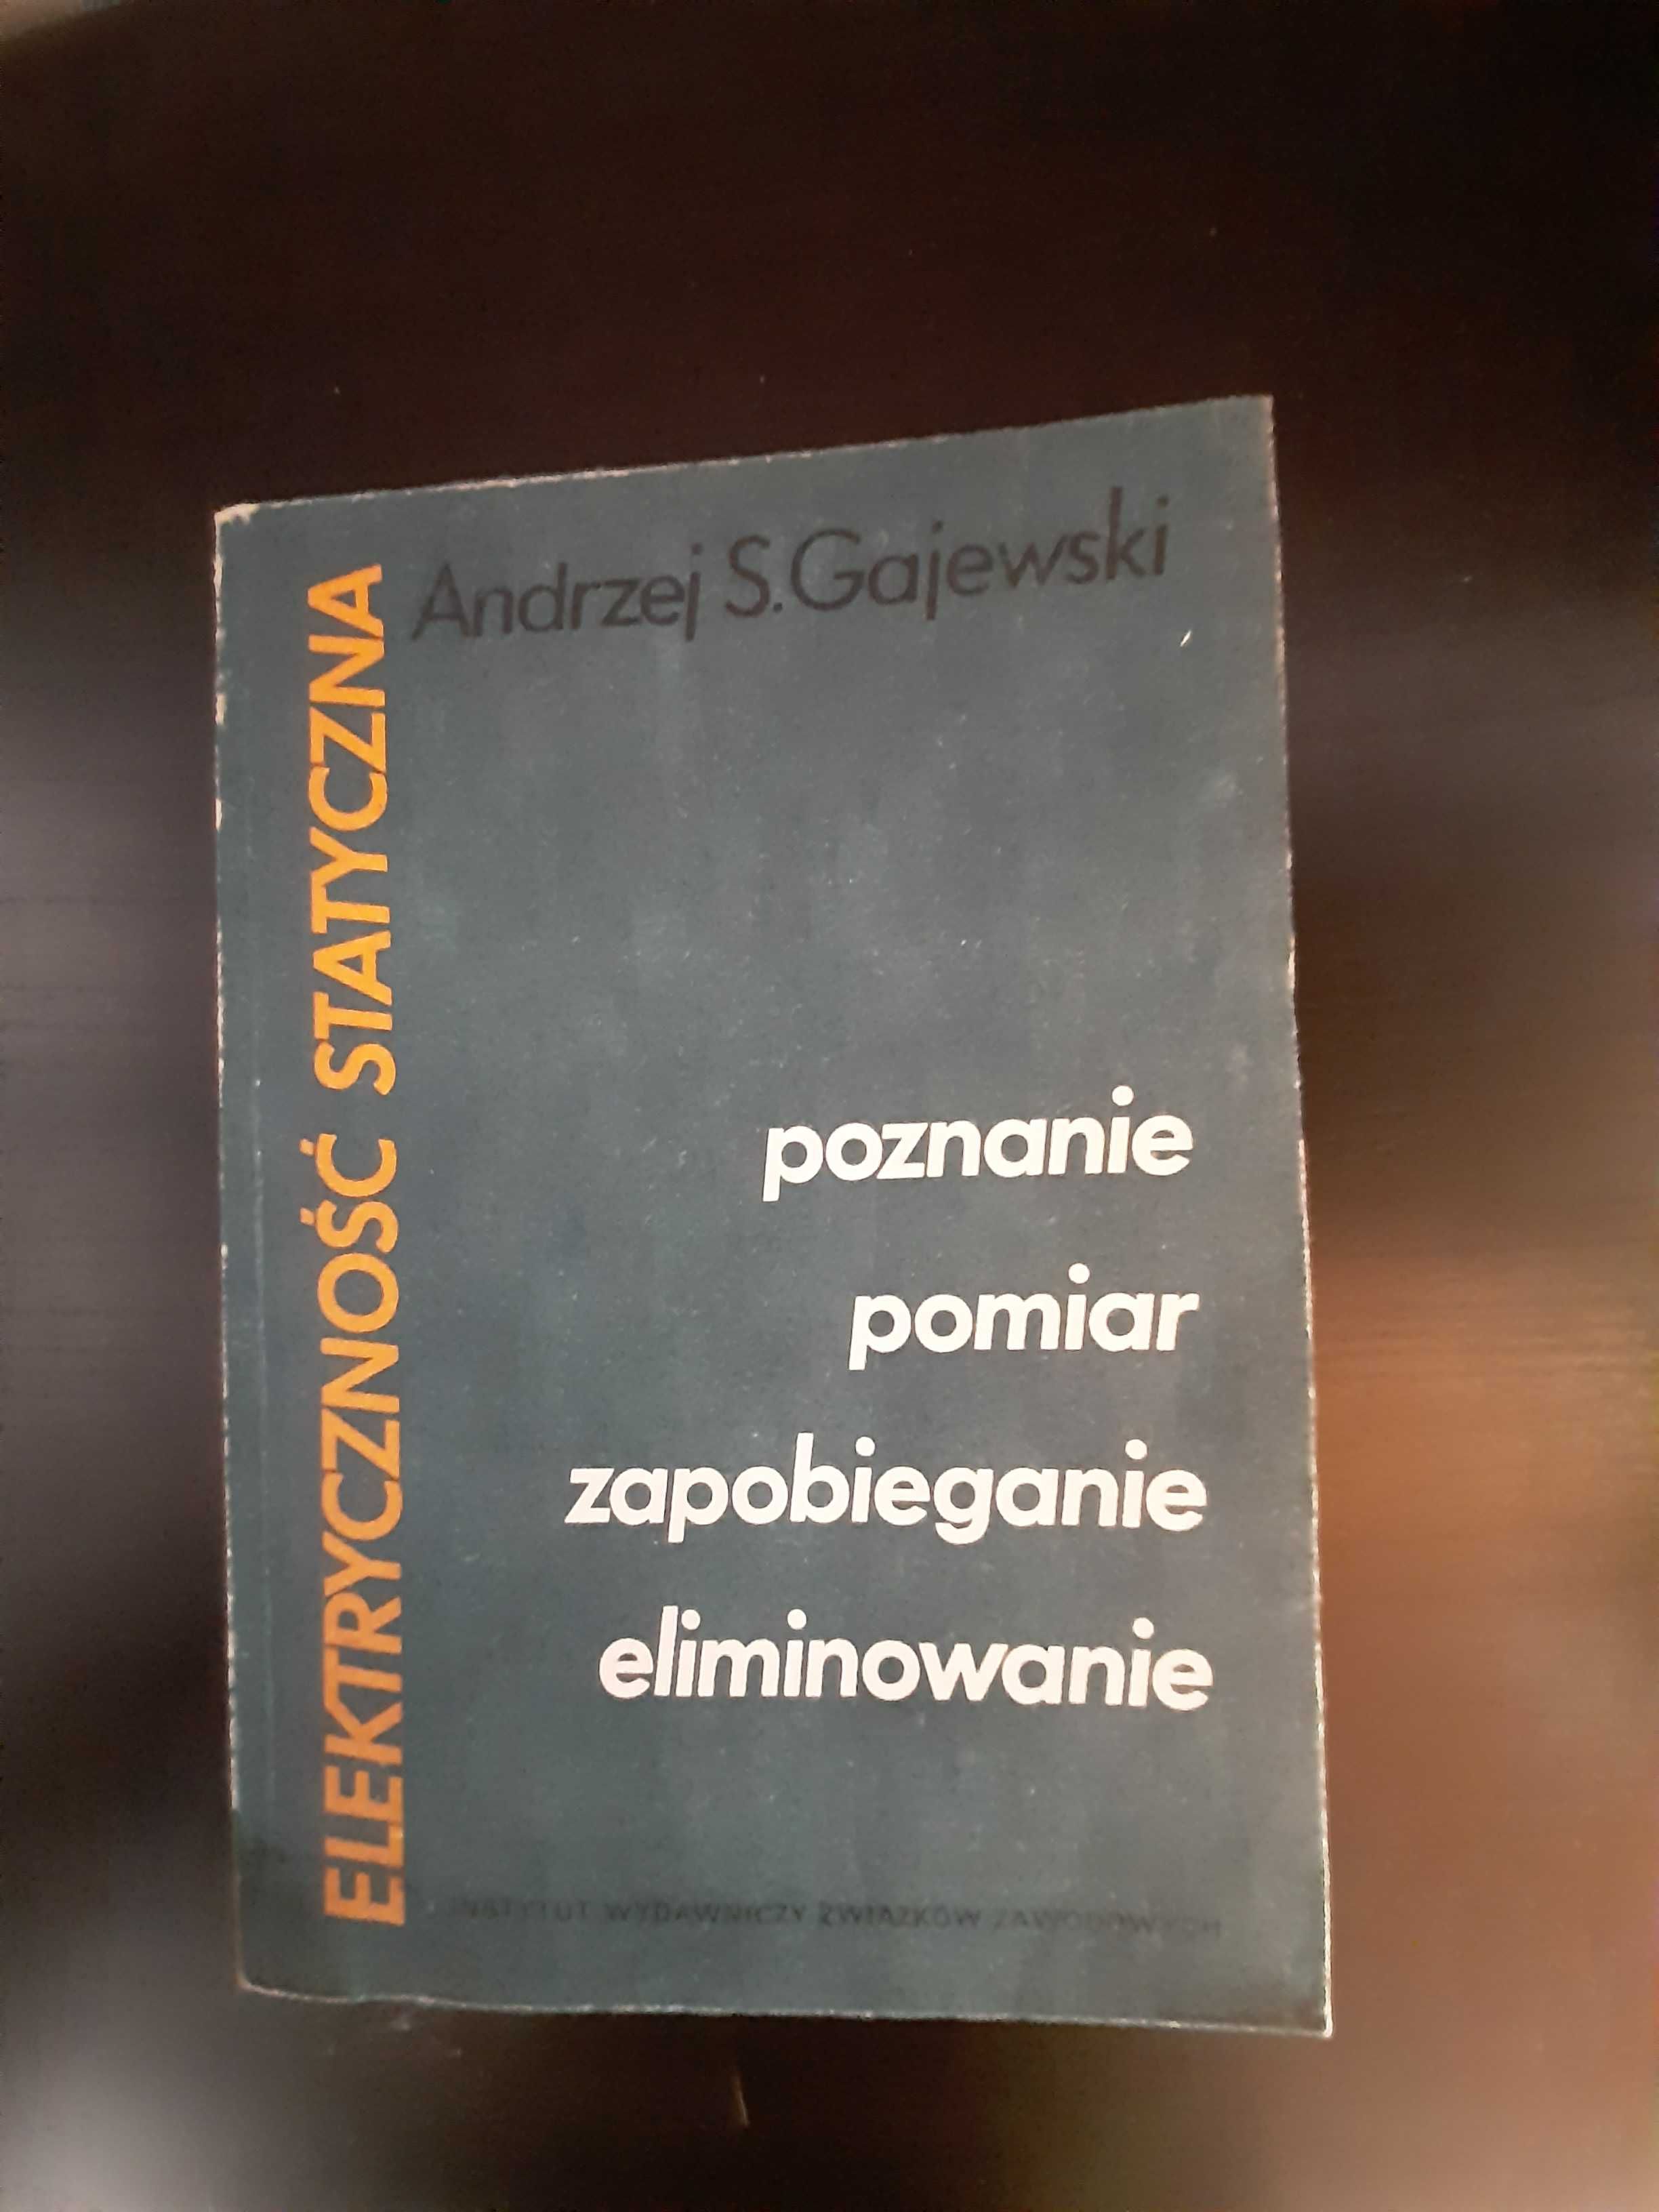 Elektryczność statyczna
Andrzej S. Gajewski